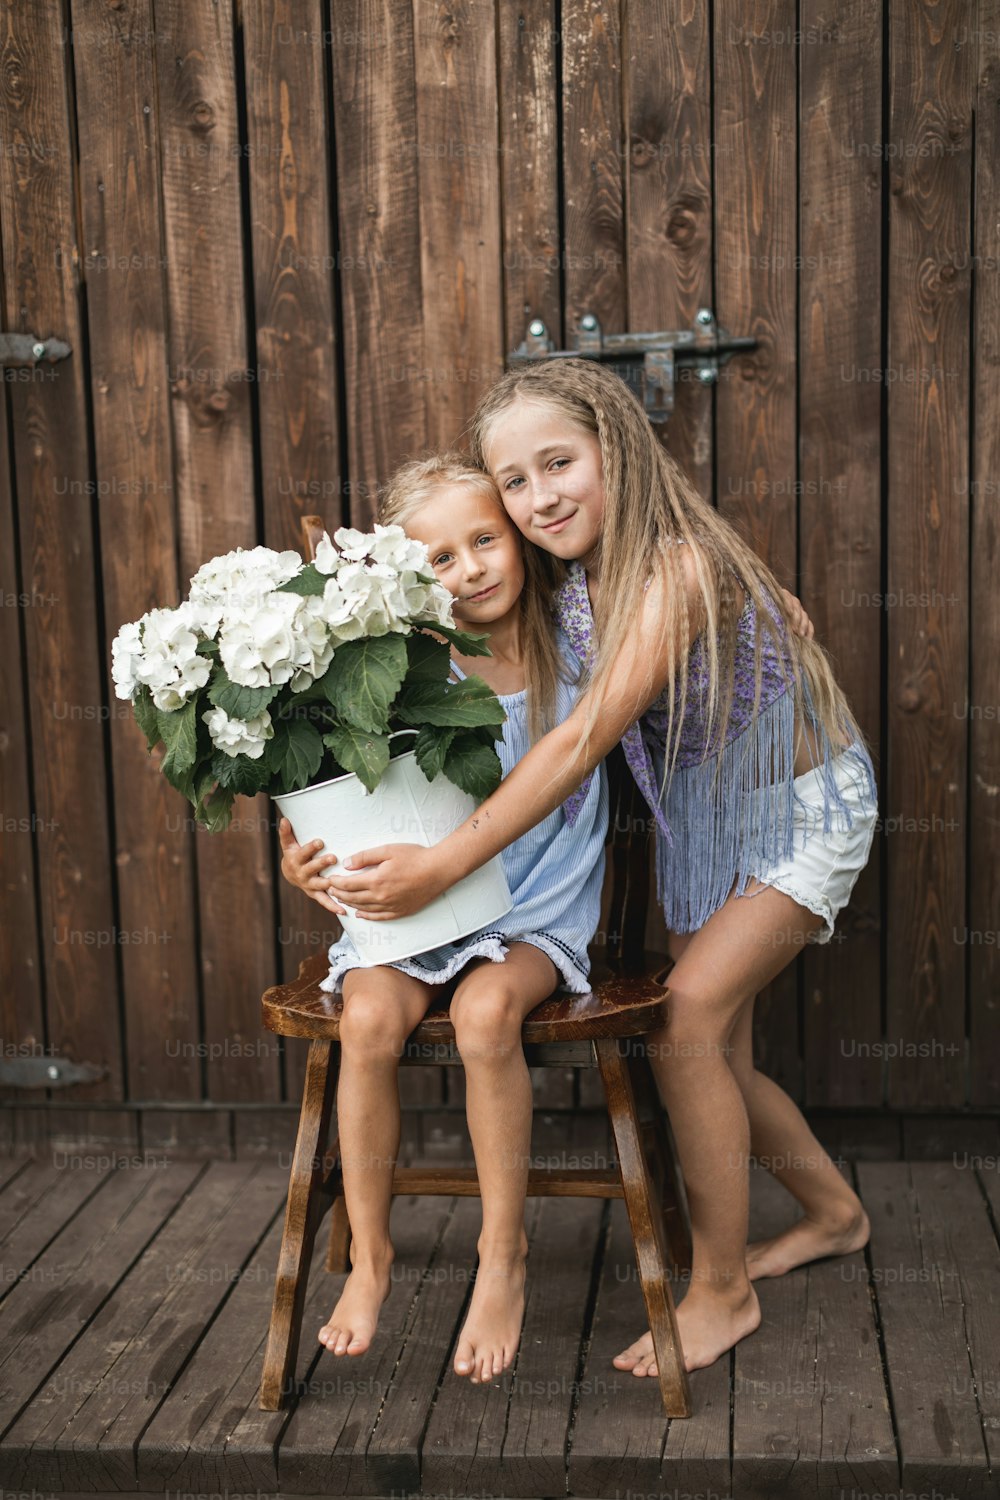 Glücklich lächelnde kleine Mädchen Schwestern auf hölzerner Scheunenwand Hintergrund, ein Mädchen sitzt auf dem Holzstuhl mit Strauß Hortensienblüten, ein anderes Mädchen steht in der Nähe und umarmt.